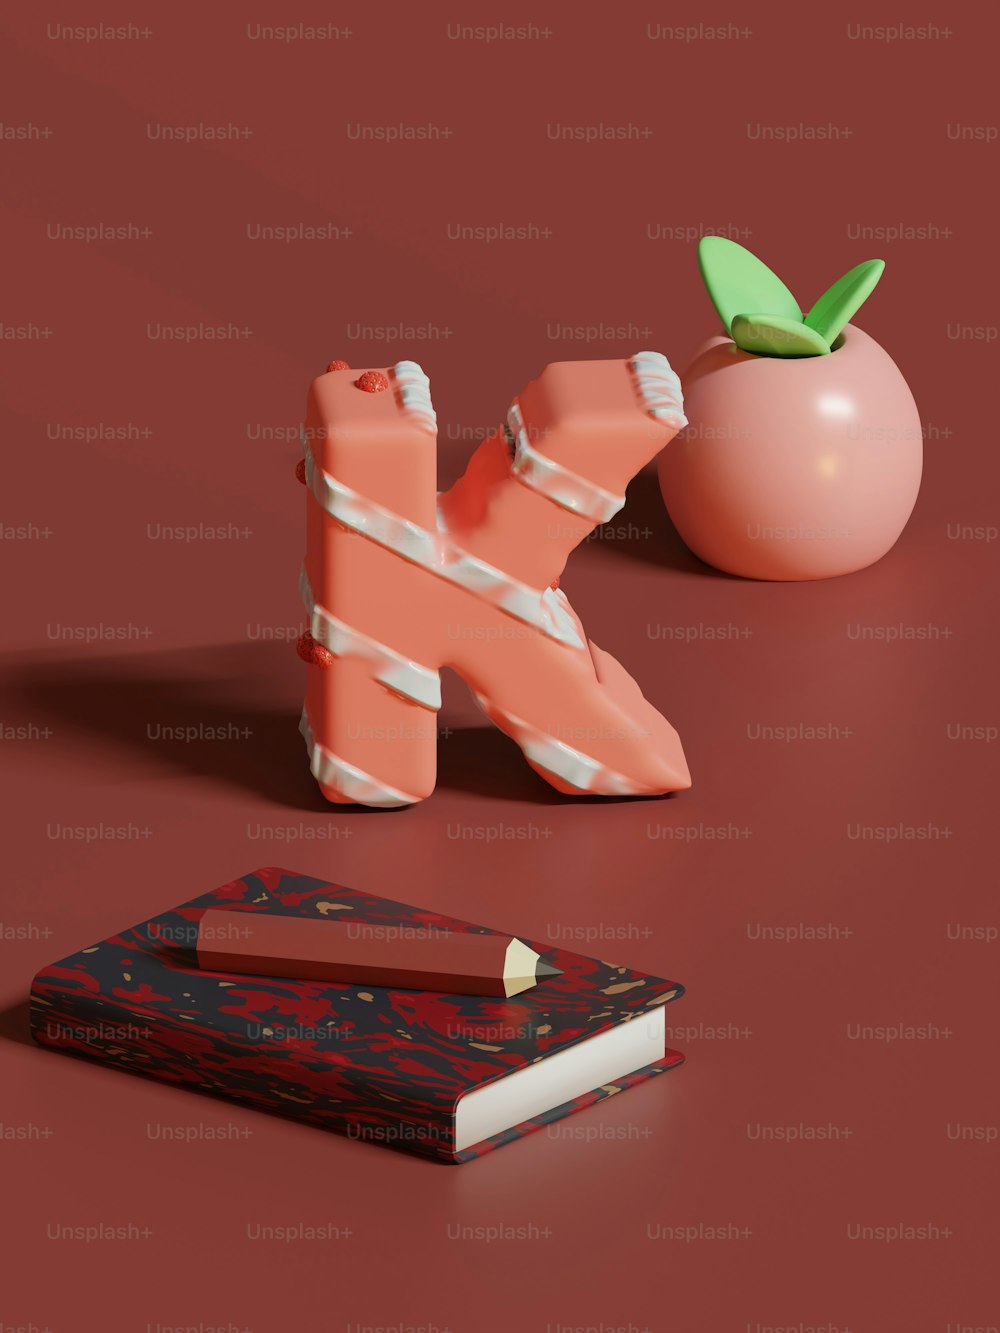 um livro, um porta-lápis e uma maçã estão em uma superfície vermelha